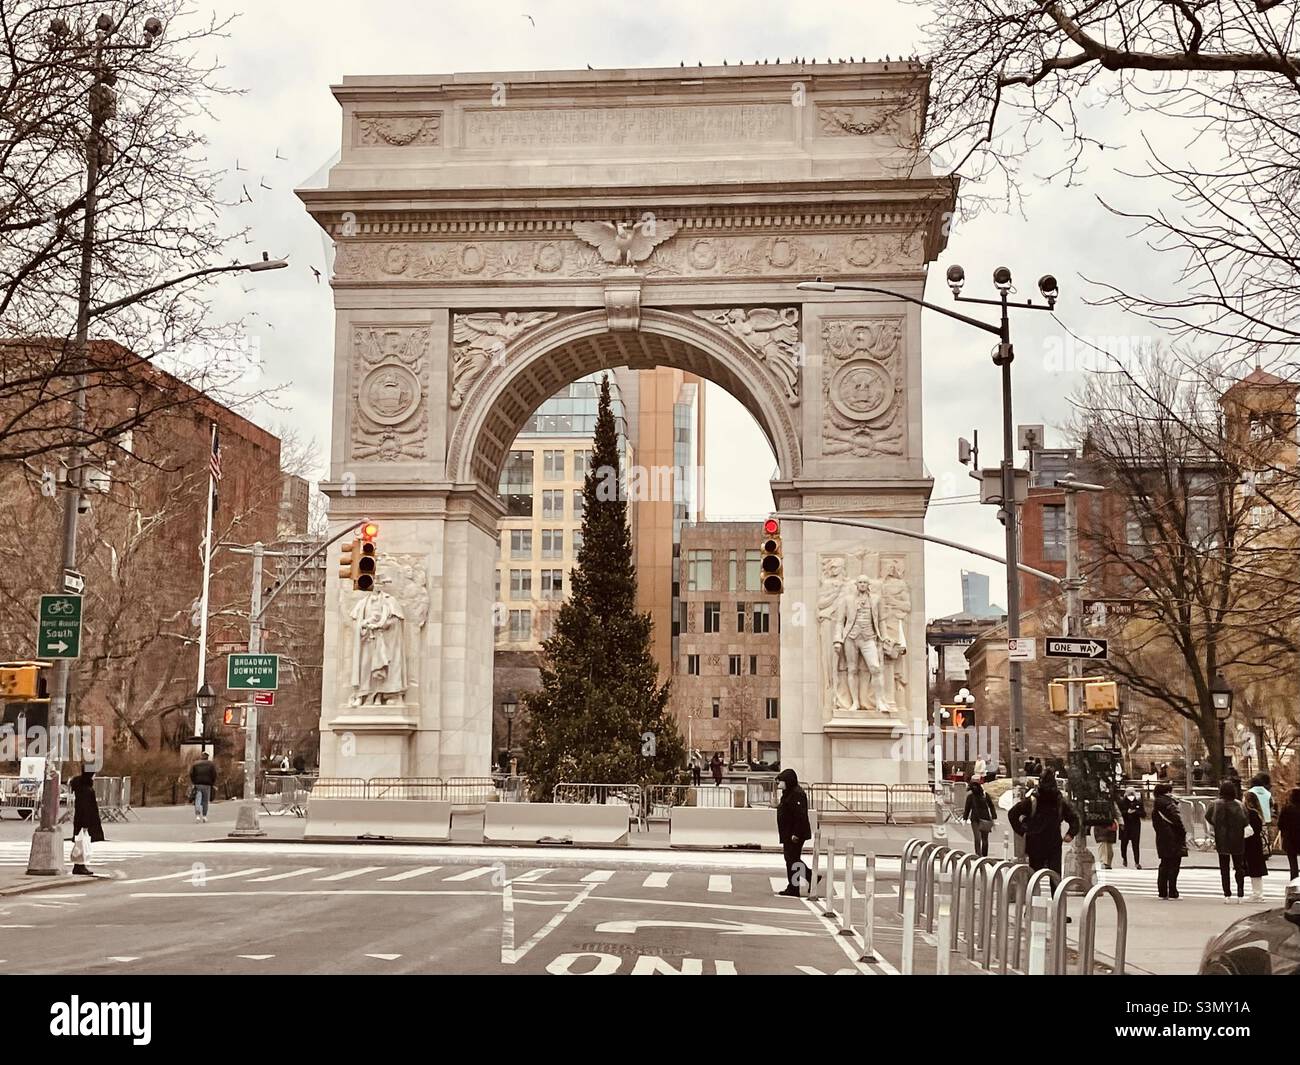 Washington Square Park Arch avec arbre de Noël Banque D'Images